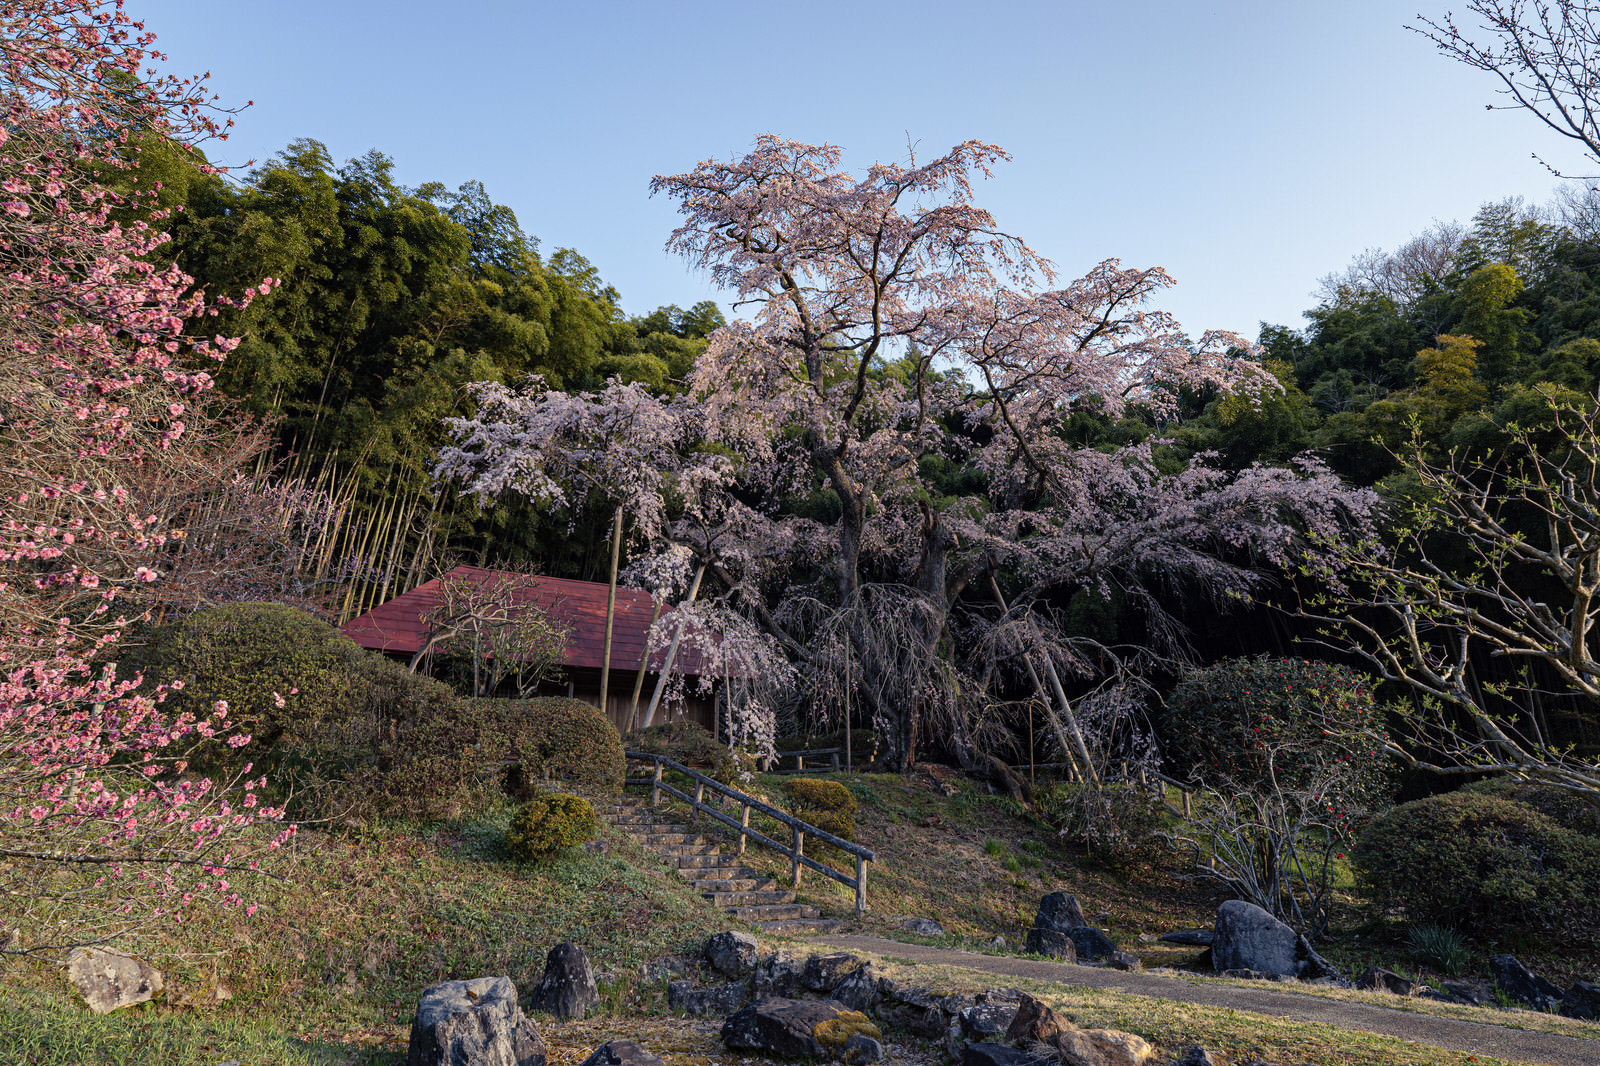 「雪村桜へと続く石段 | フリー素材のぱくたそ」の写真